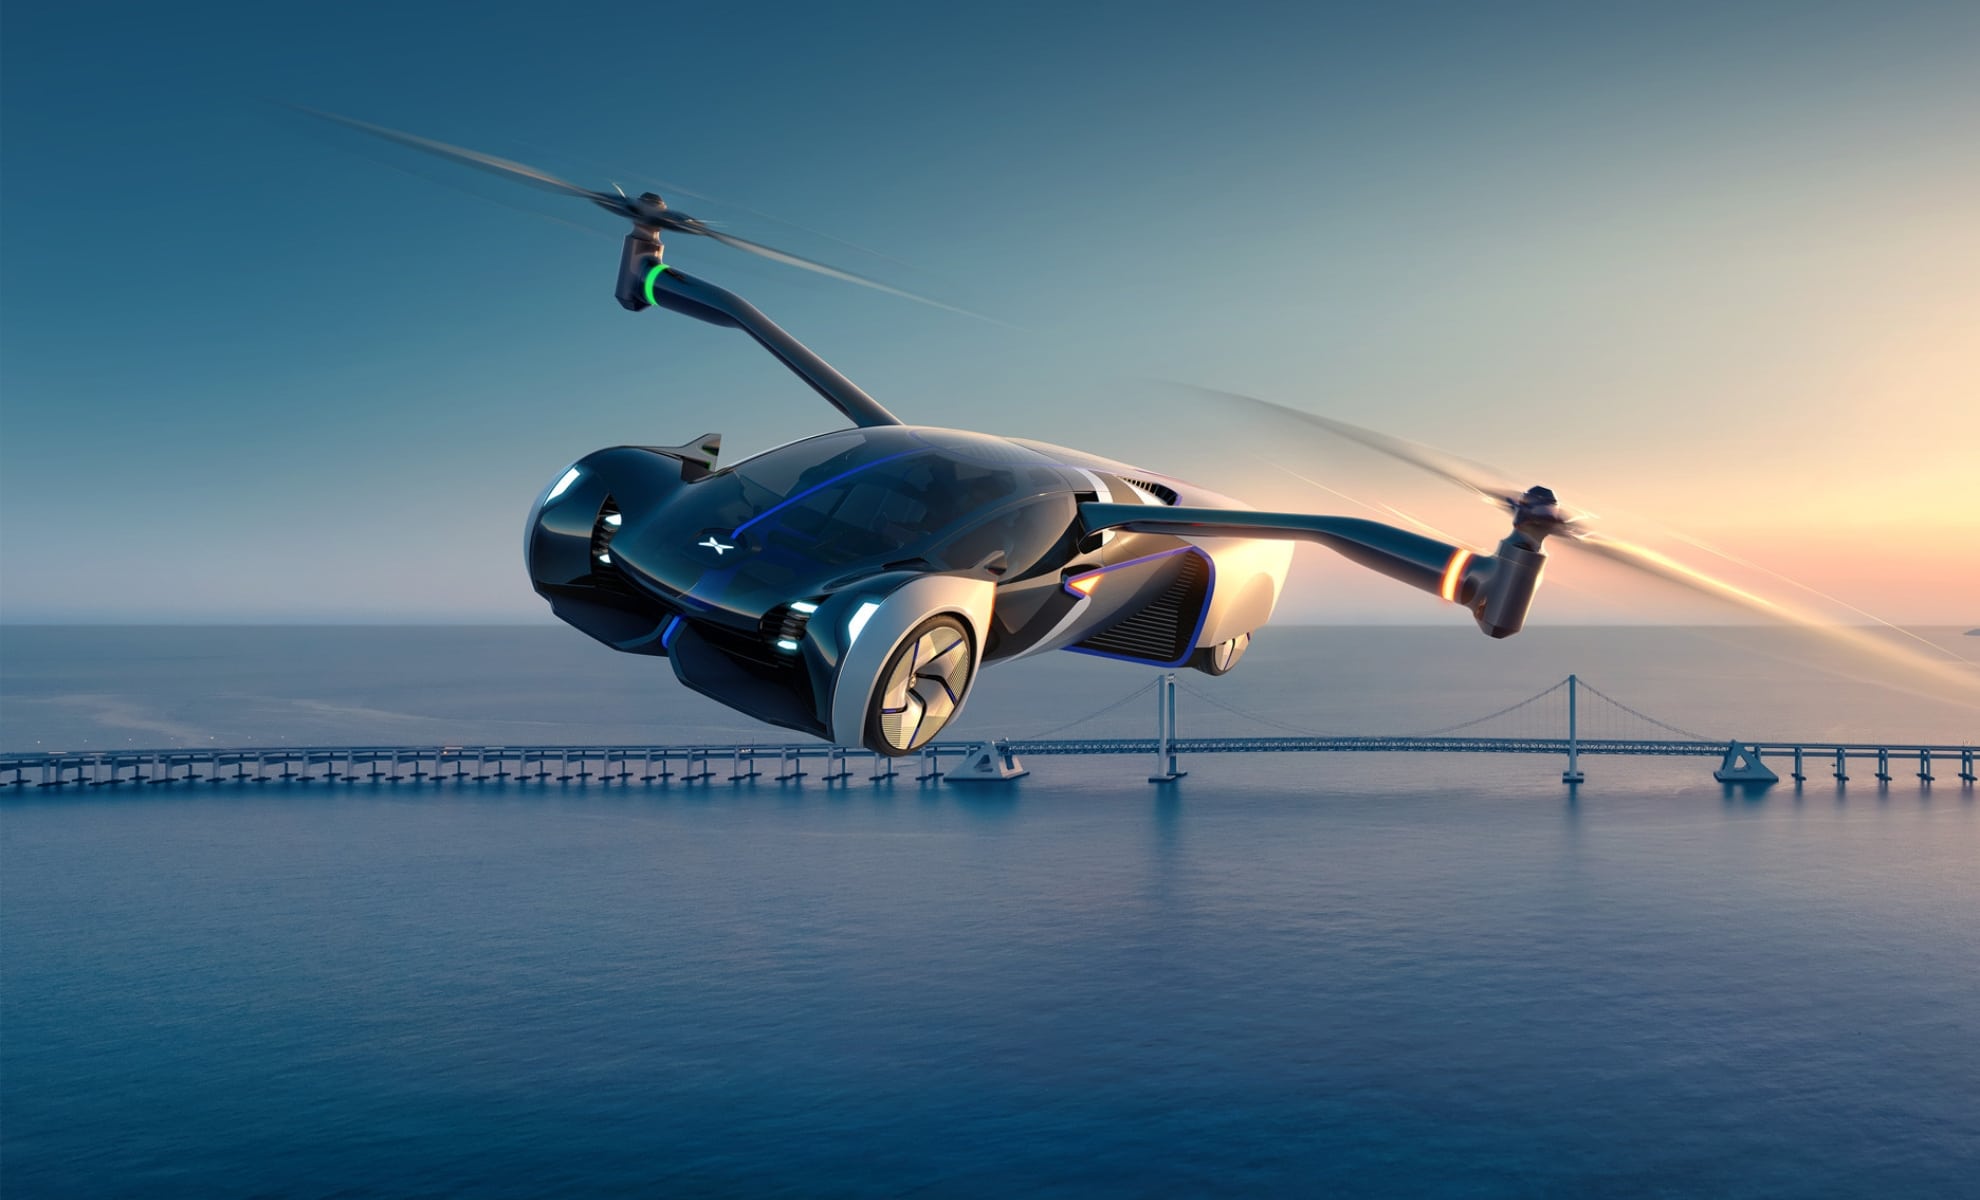 La science-fiction devient réalité : découvrez Alef Model A, la toute première voiture autorisée à voler !